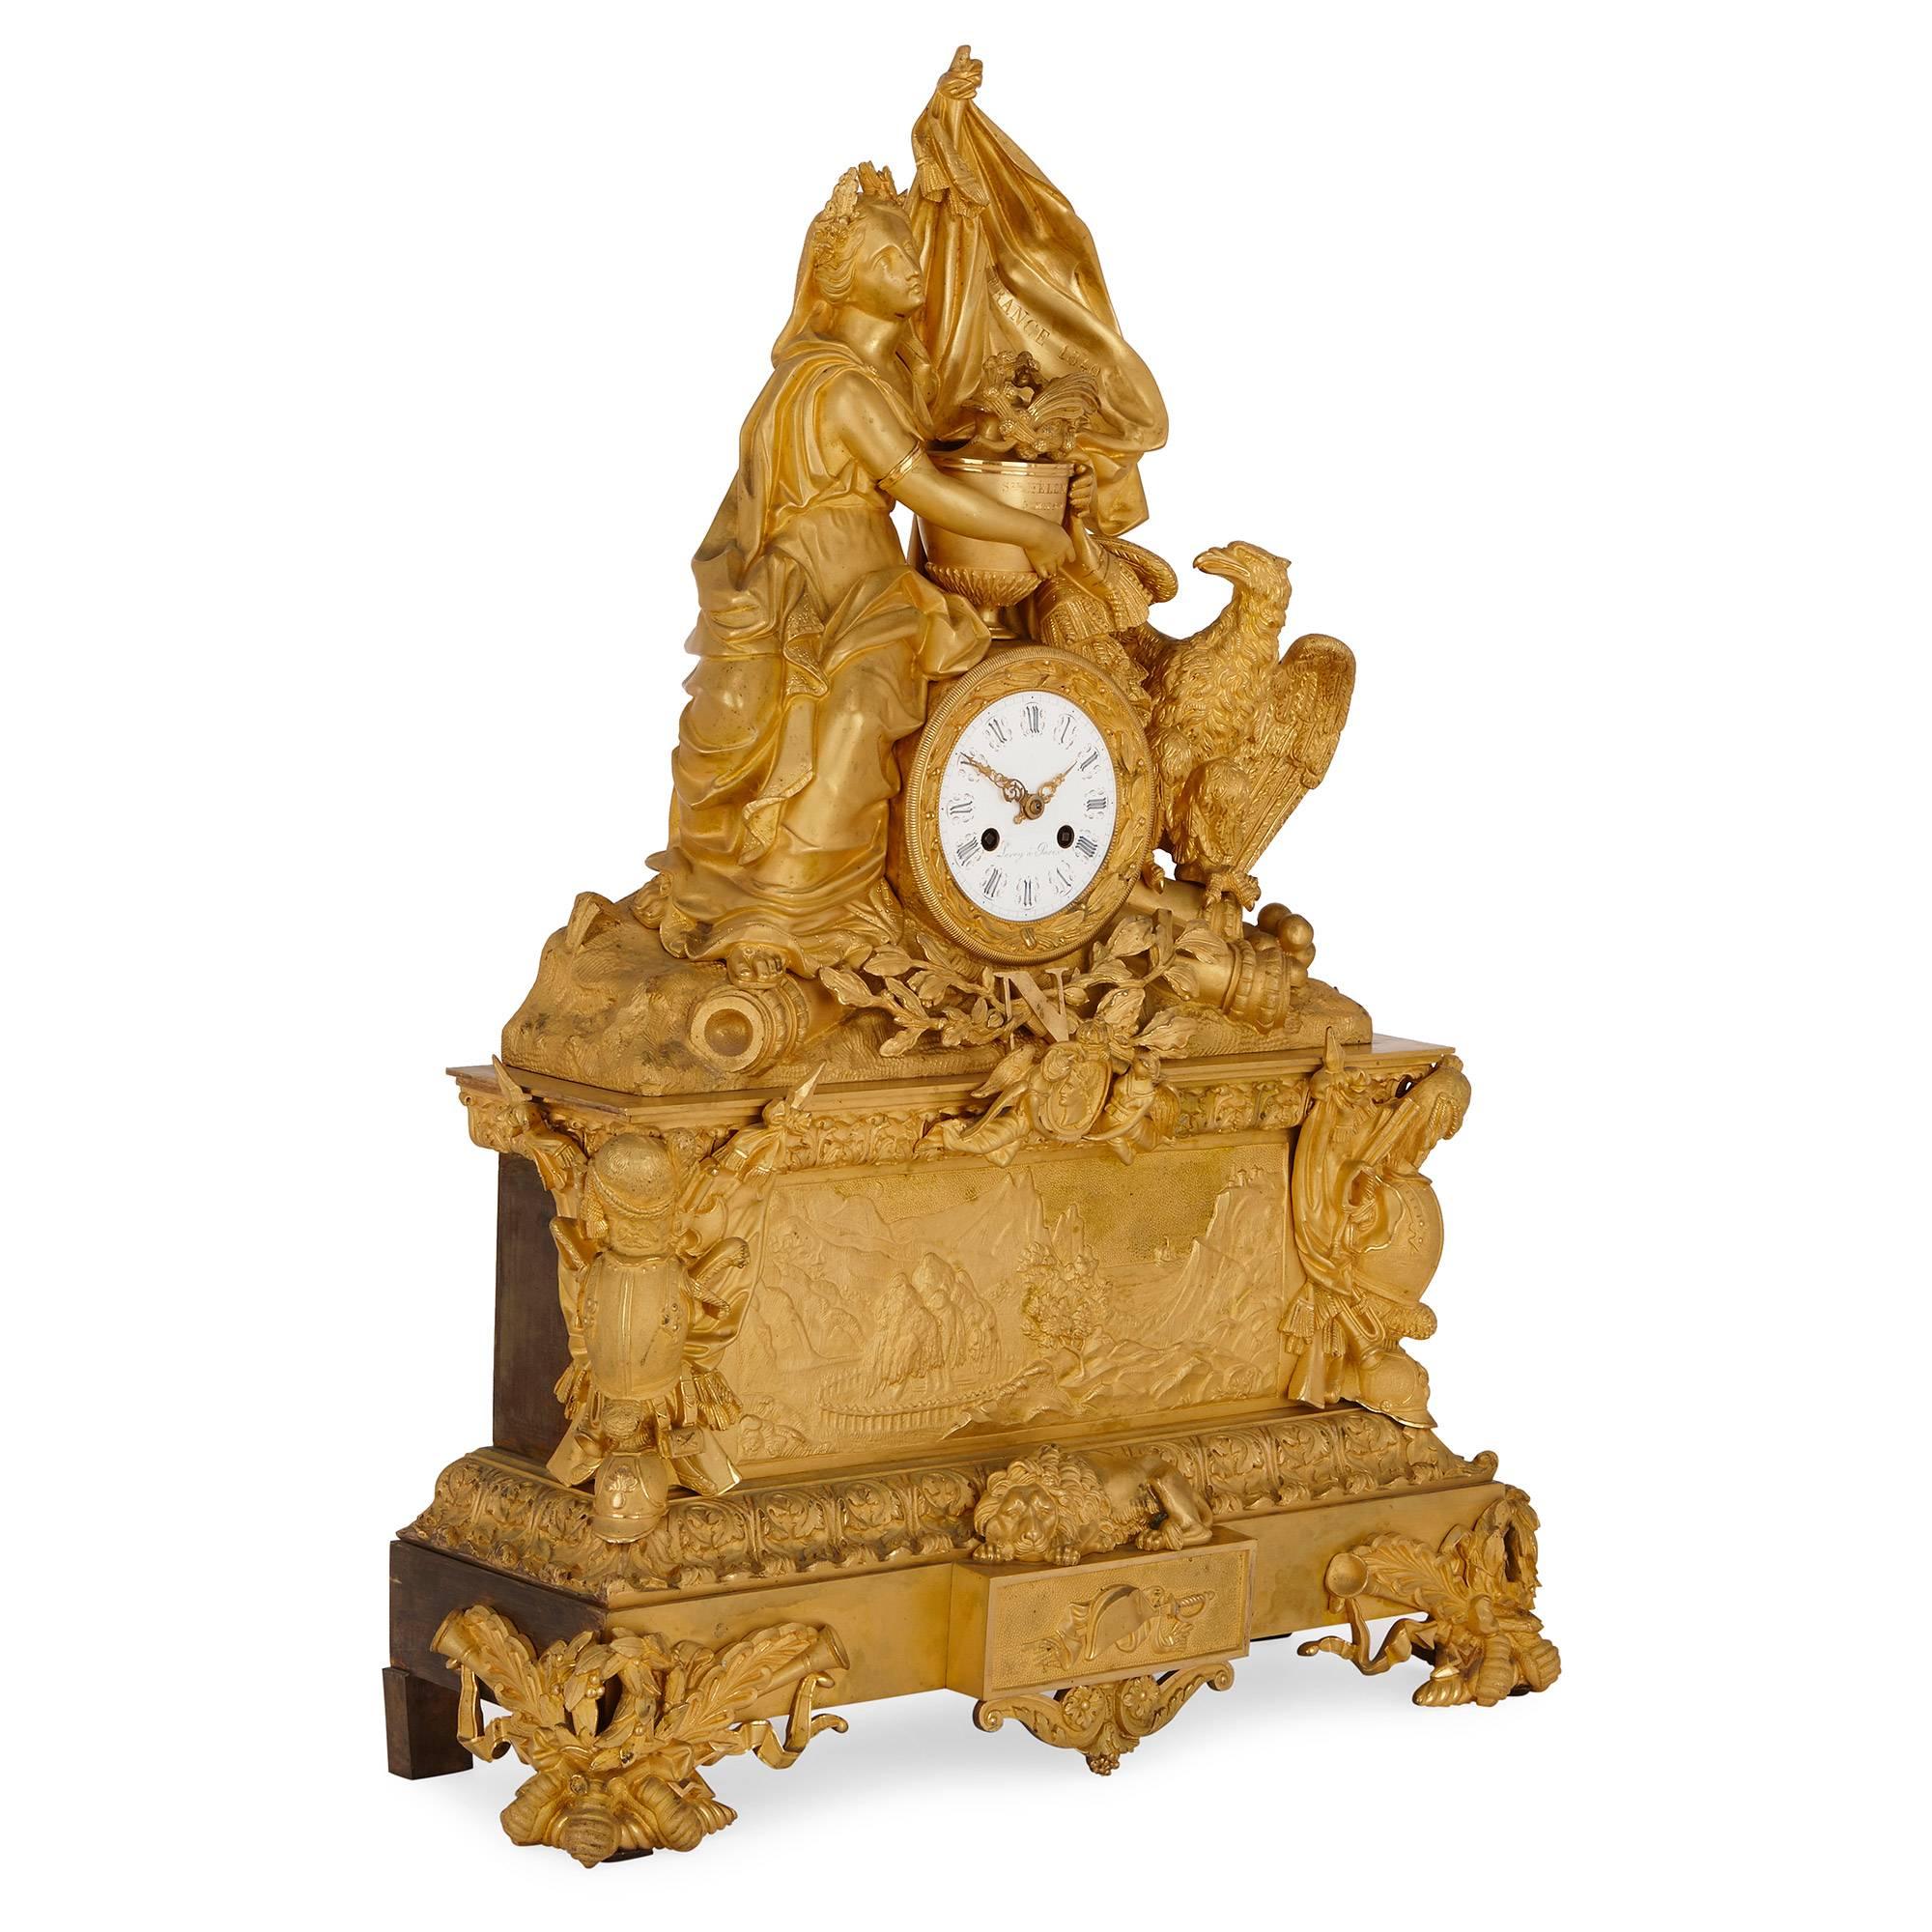 Cette belle pendule de cheminée, entièrement réalisée en bronze doré par le célèbre horloger parisien LeRoy, commémore le retour des cendres de Napoléon en France en 1840. L'horloge est posée sur une base rectangulaire en gradins avec quatre pieds